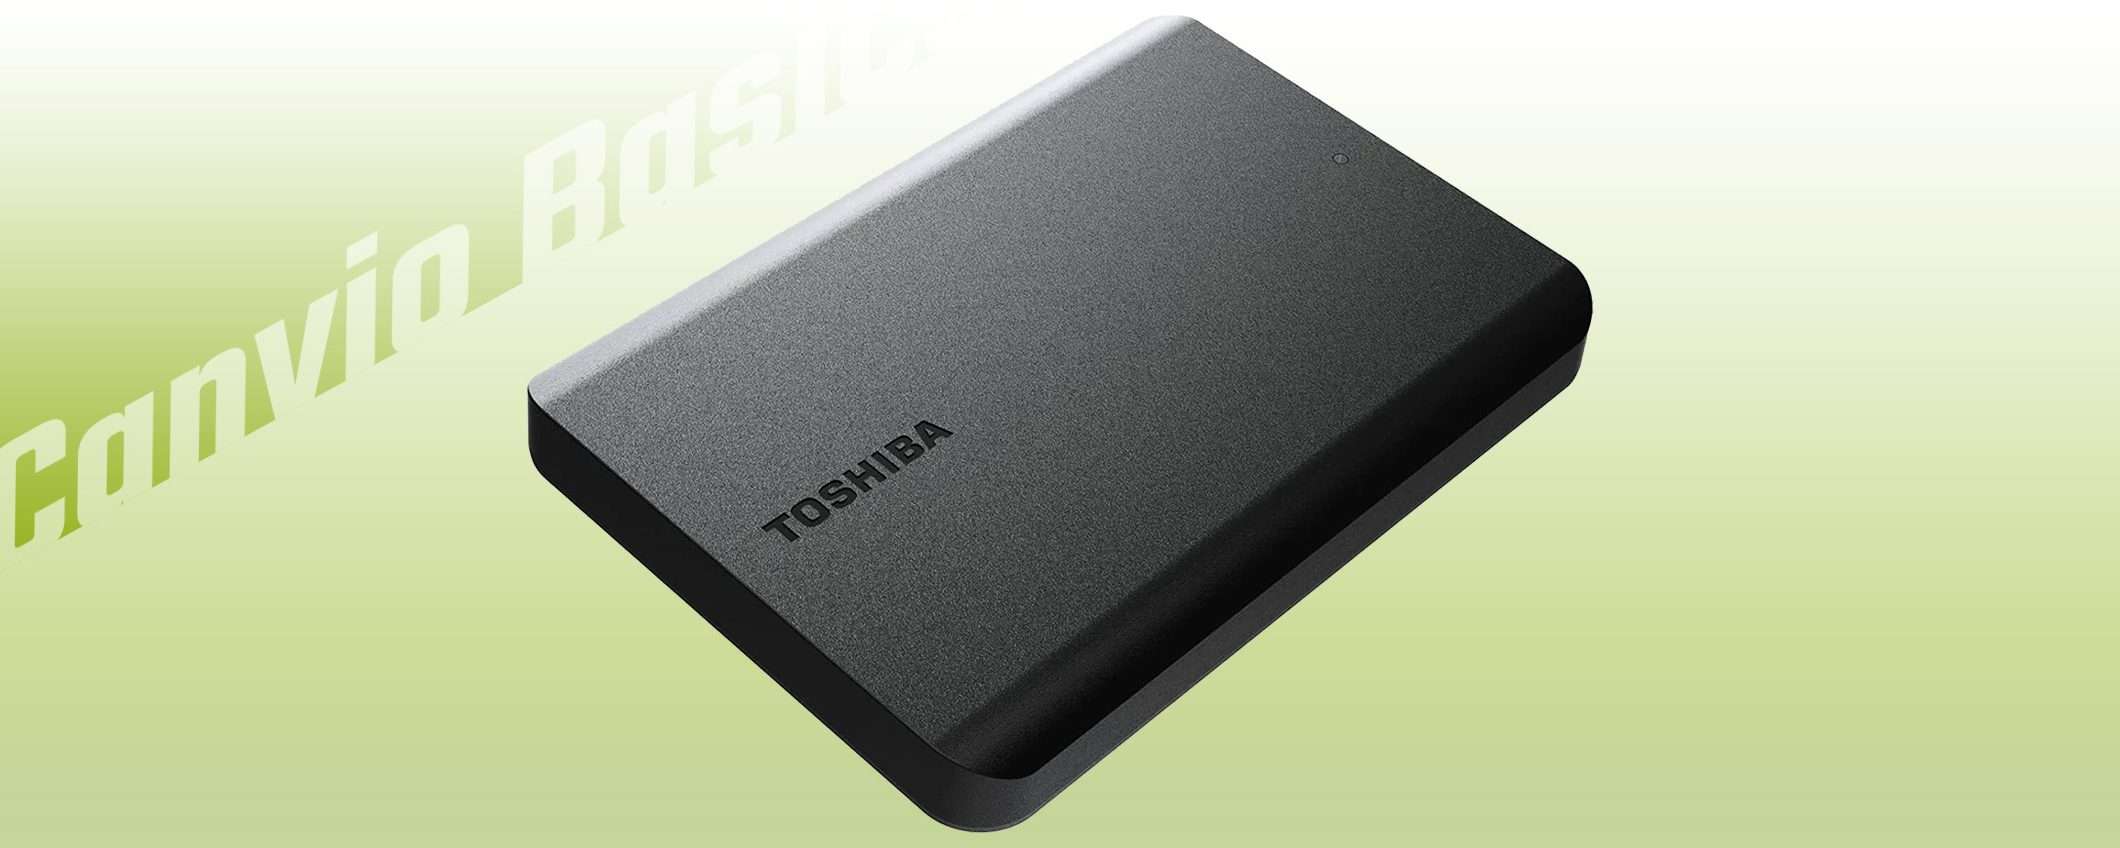 4 TB in tasca: l'offerta sul disco esterno Toshiba